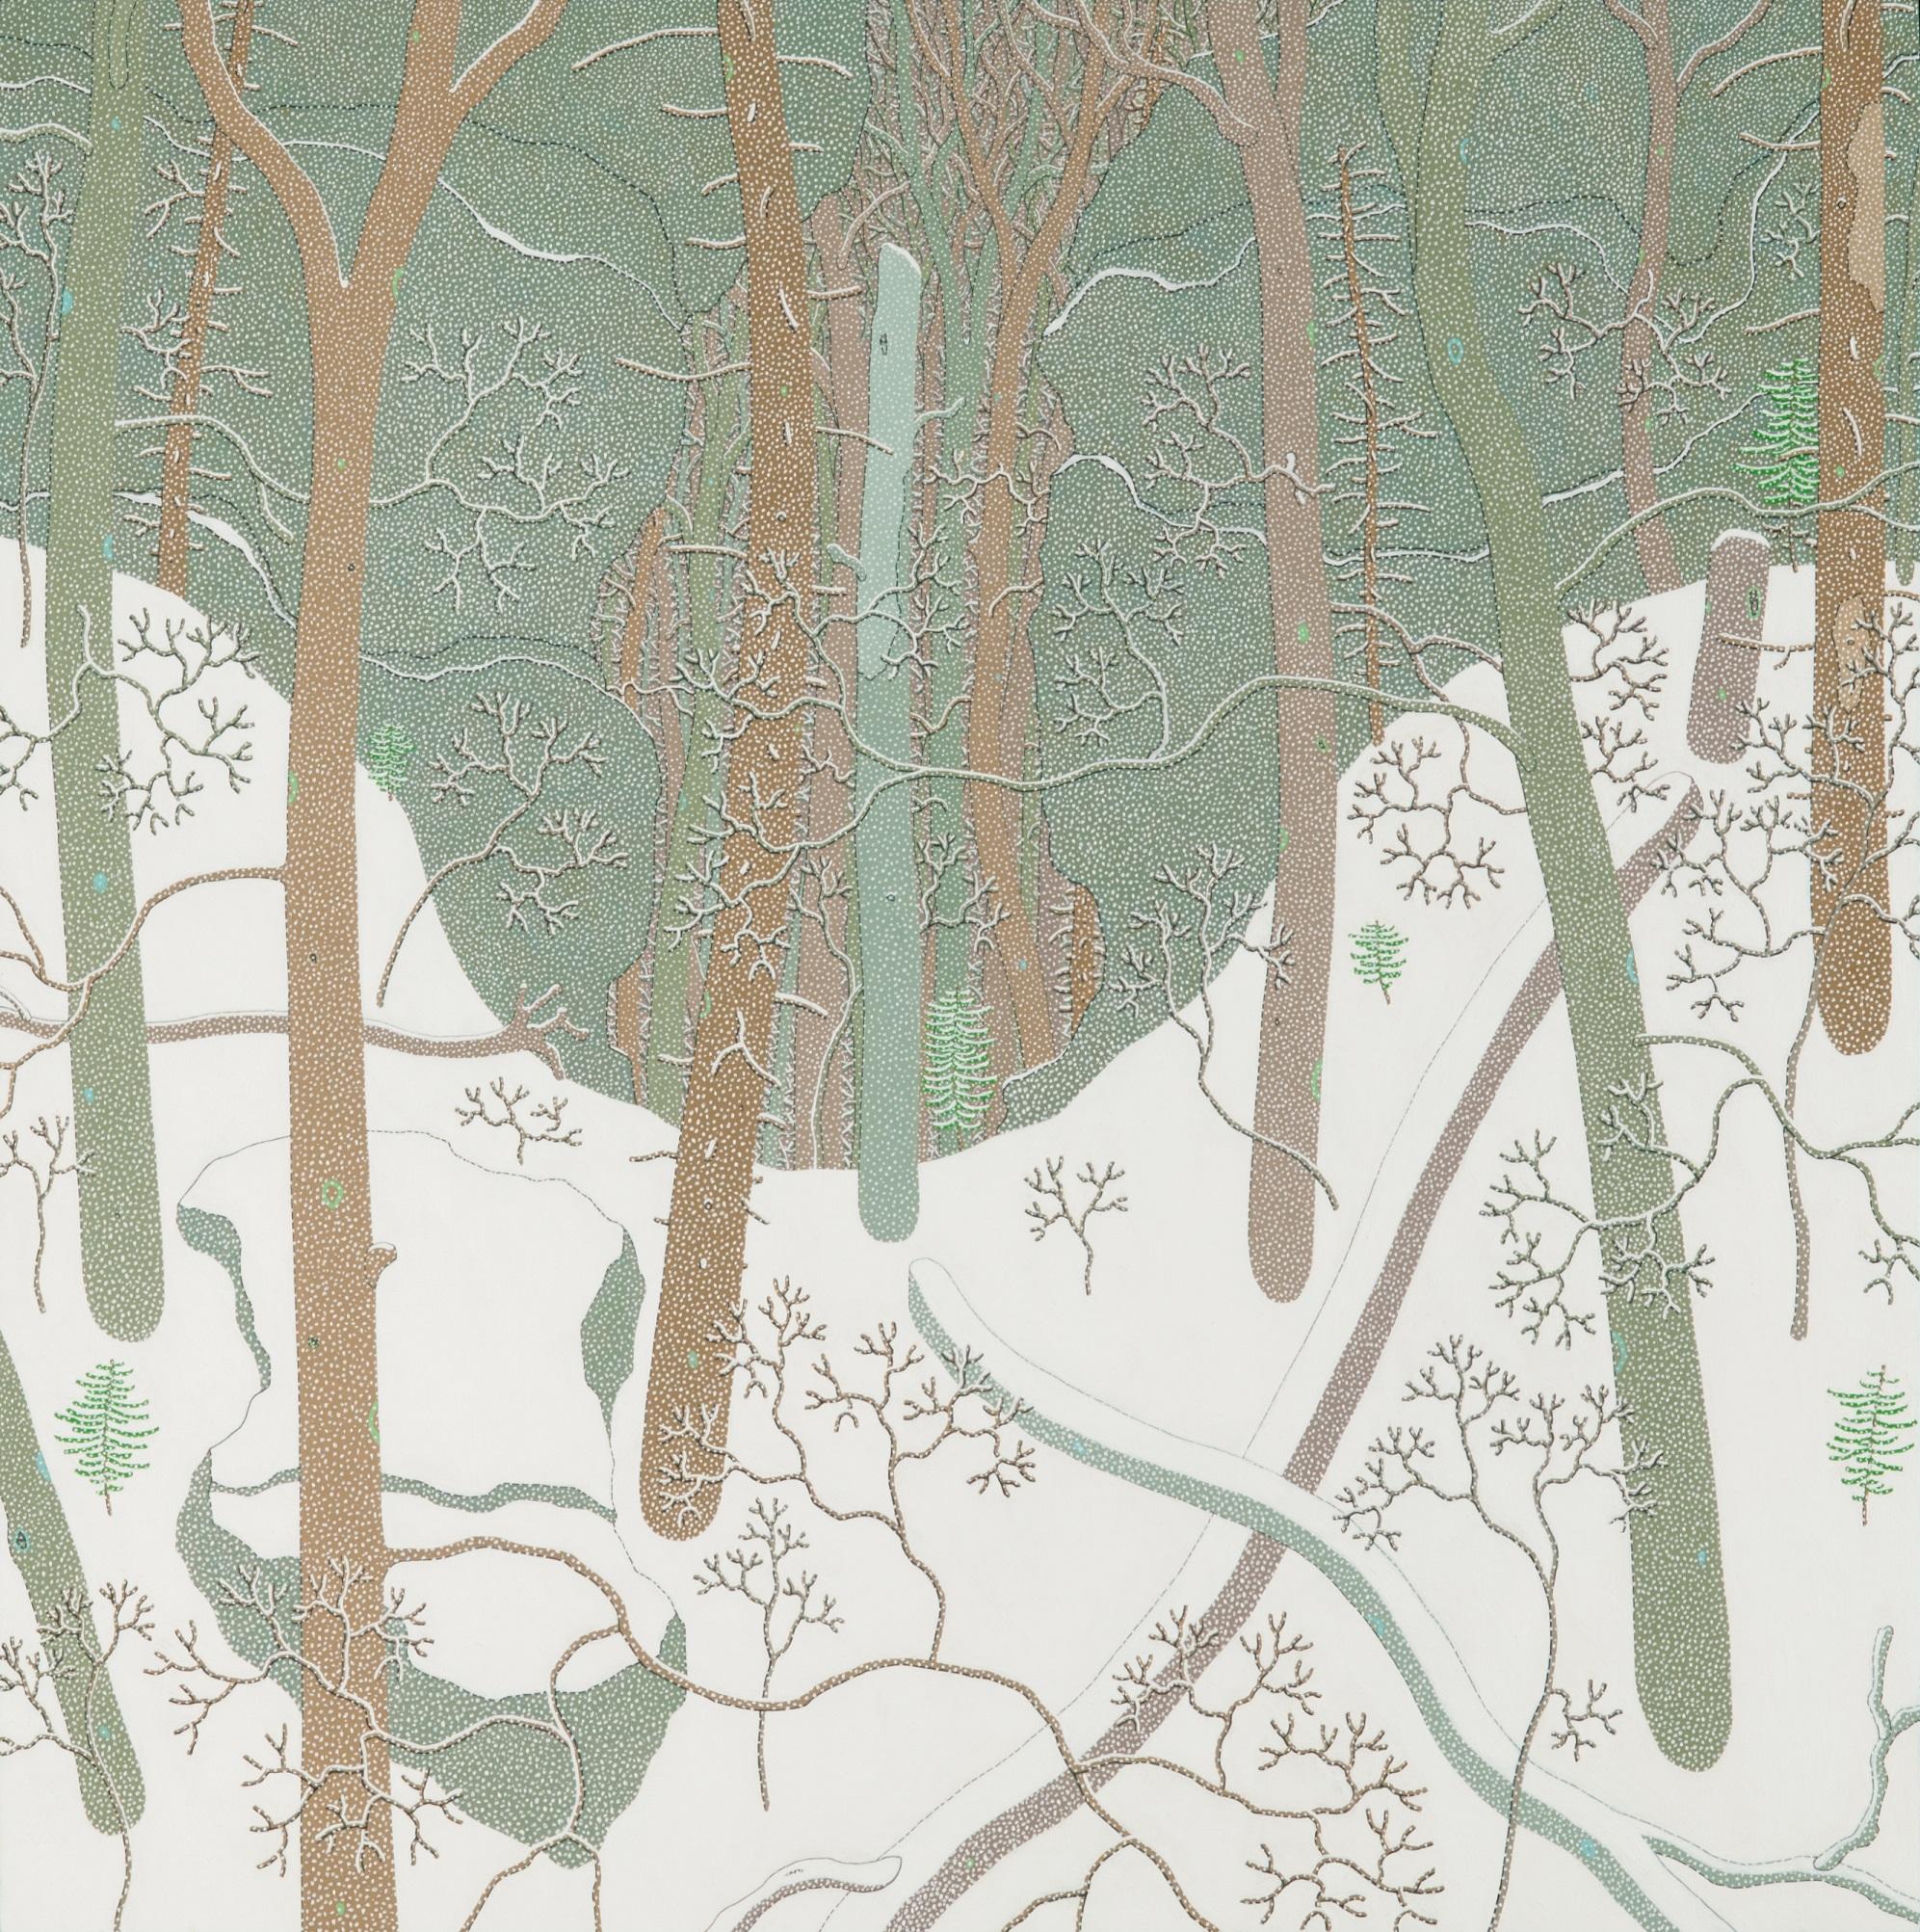 Landscape Painting Gregory Hennen - Paysage d'automne Jan Wyatt Mt, Paysage d'hiver, Bois de neige, Forêt avec neige blanche